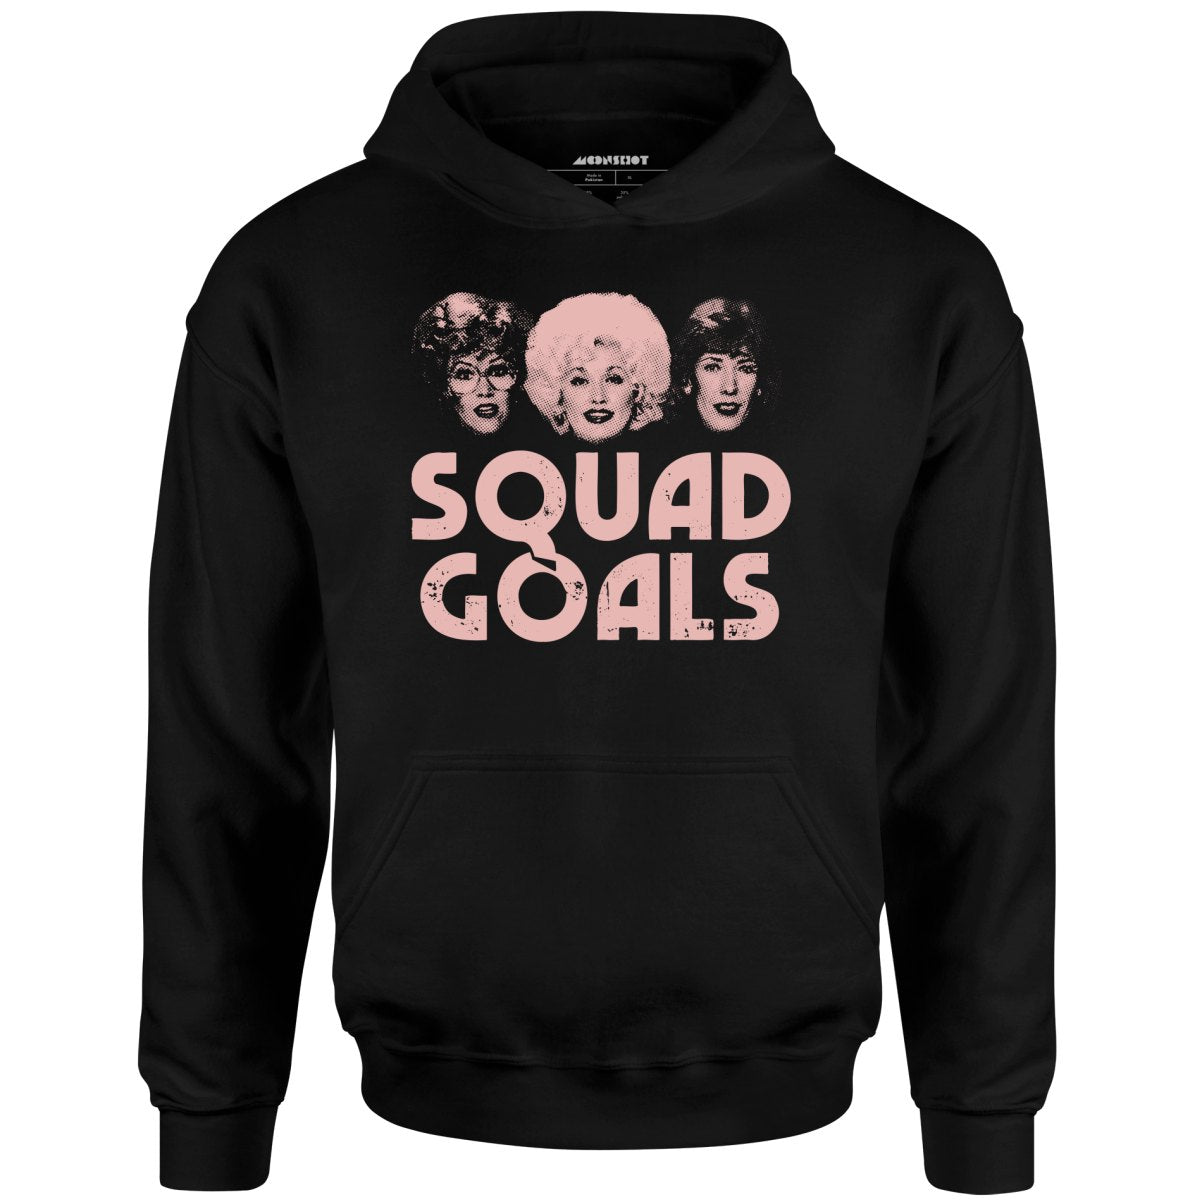 Squad Goals 9 to 5 - Unisex Hoodie